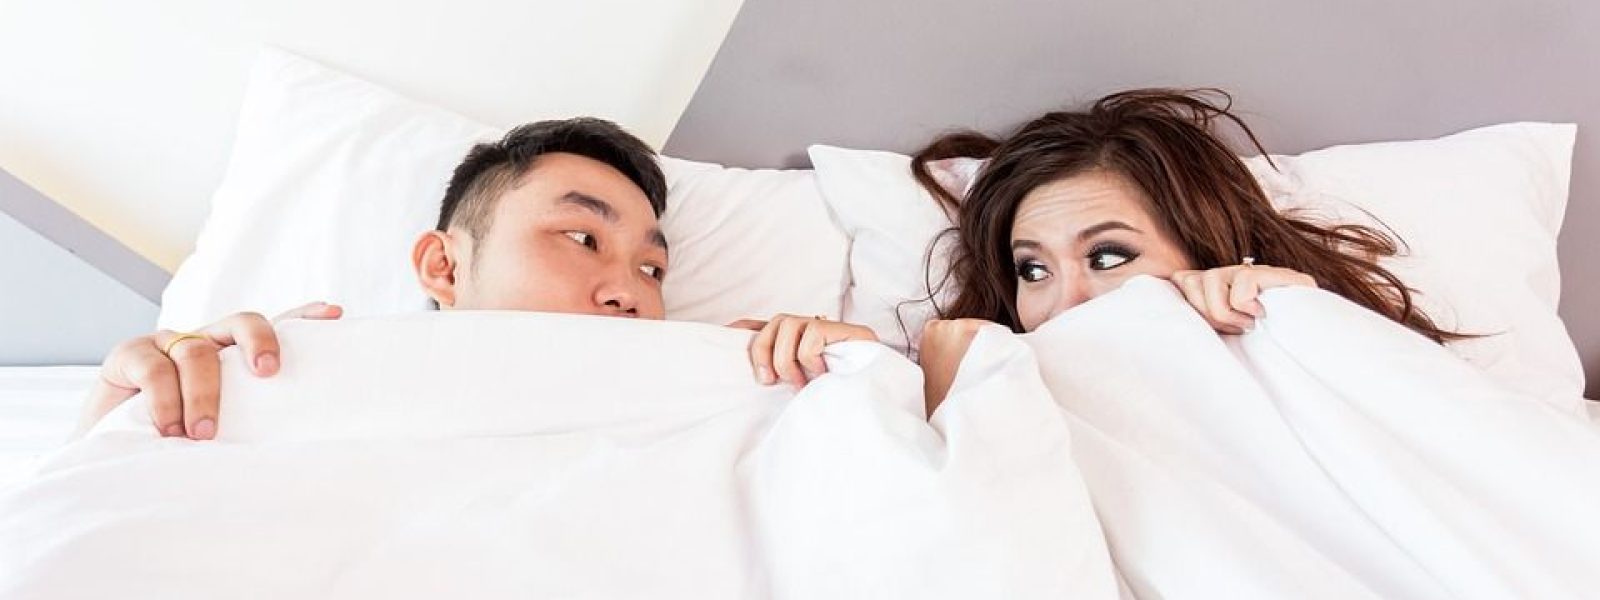 ¿Cómo le digo a mi pareja que no me gusta en la cama?